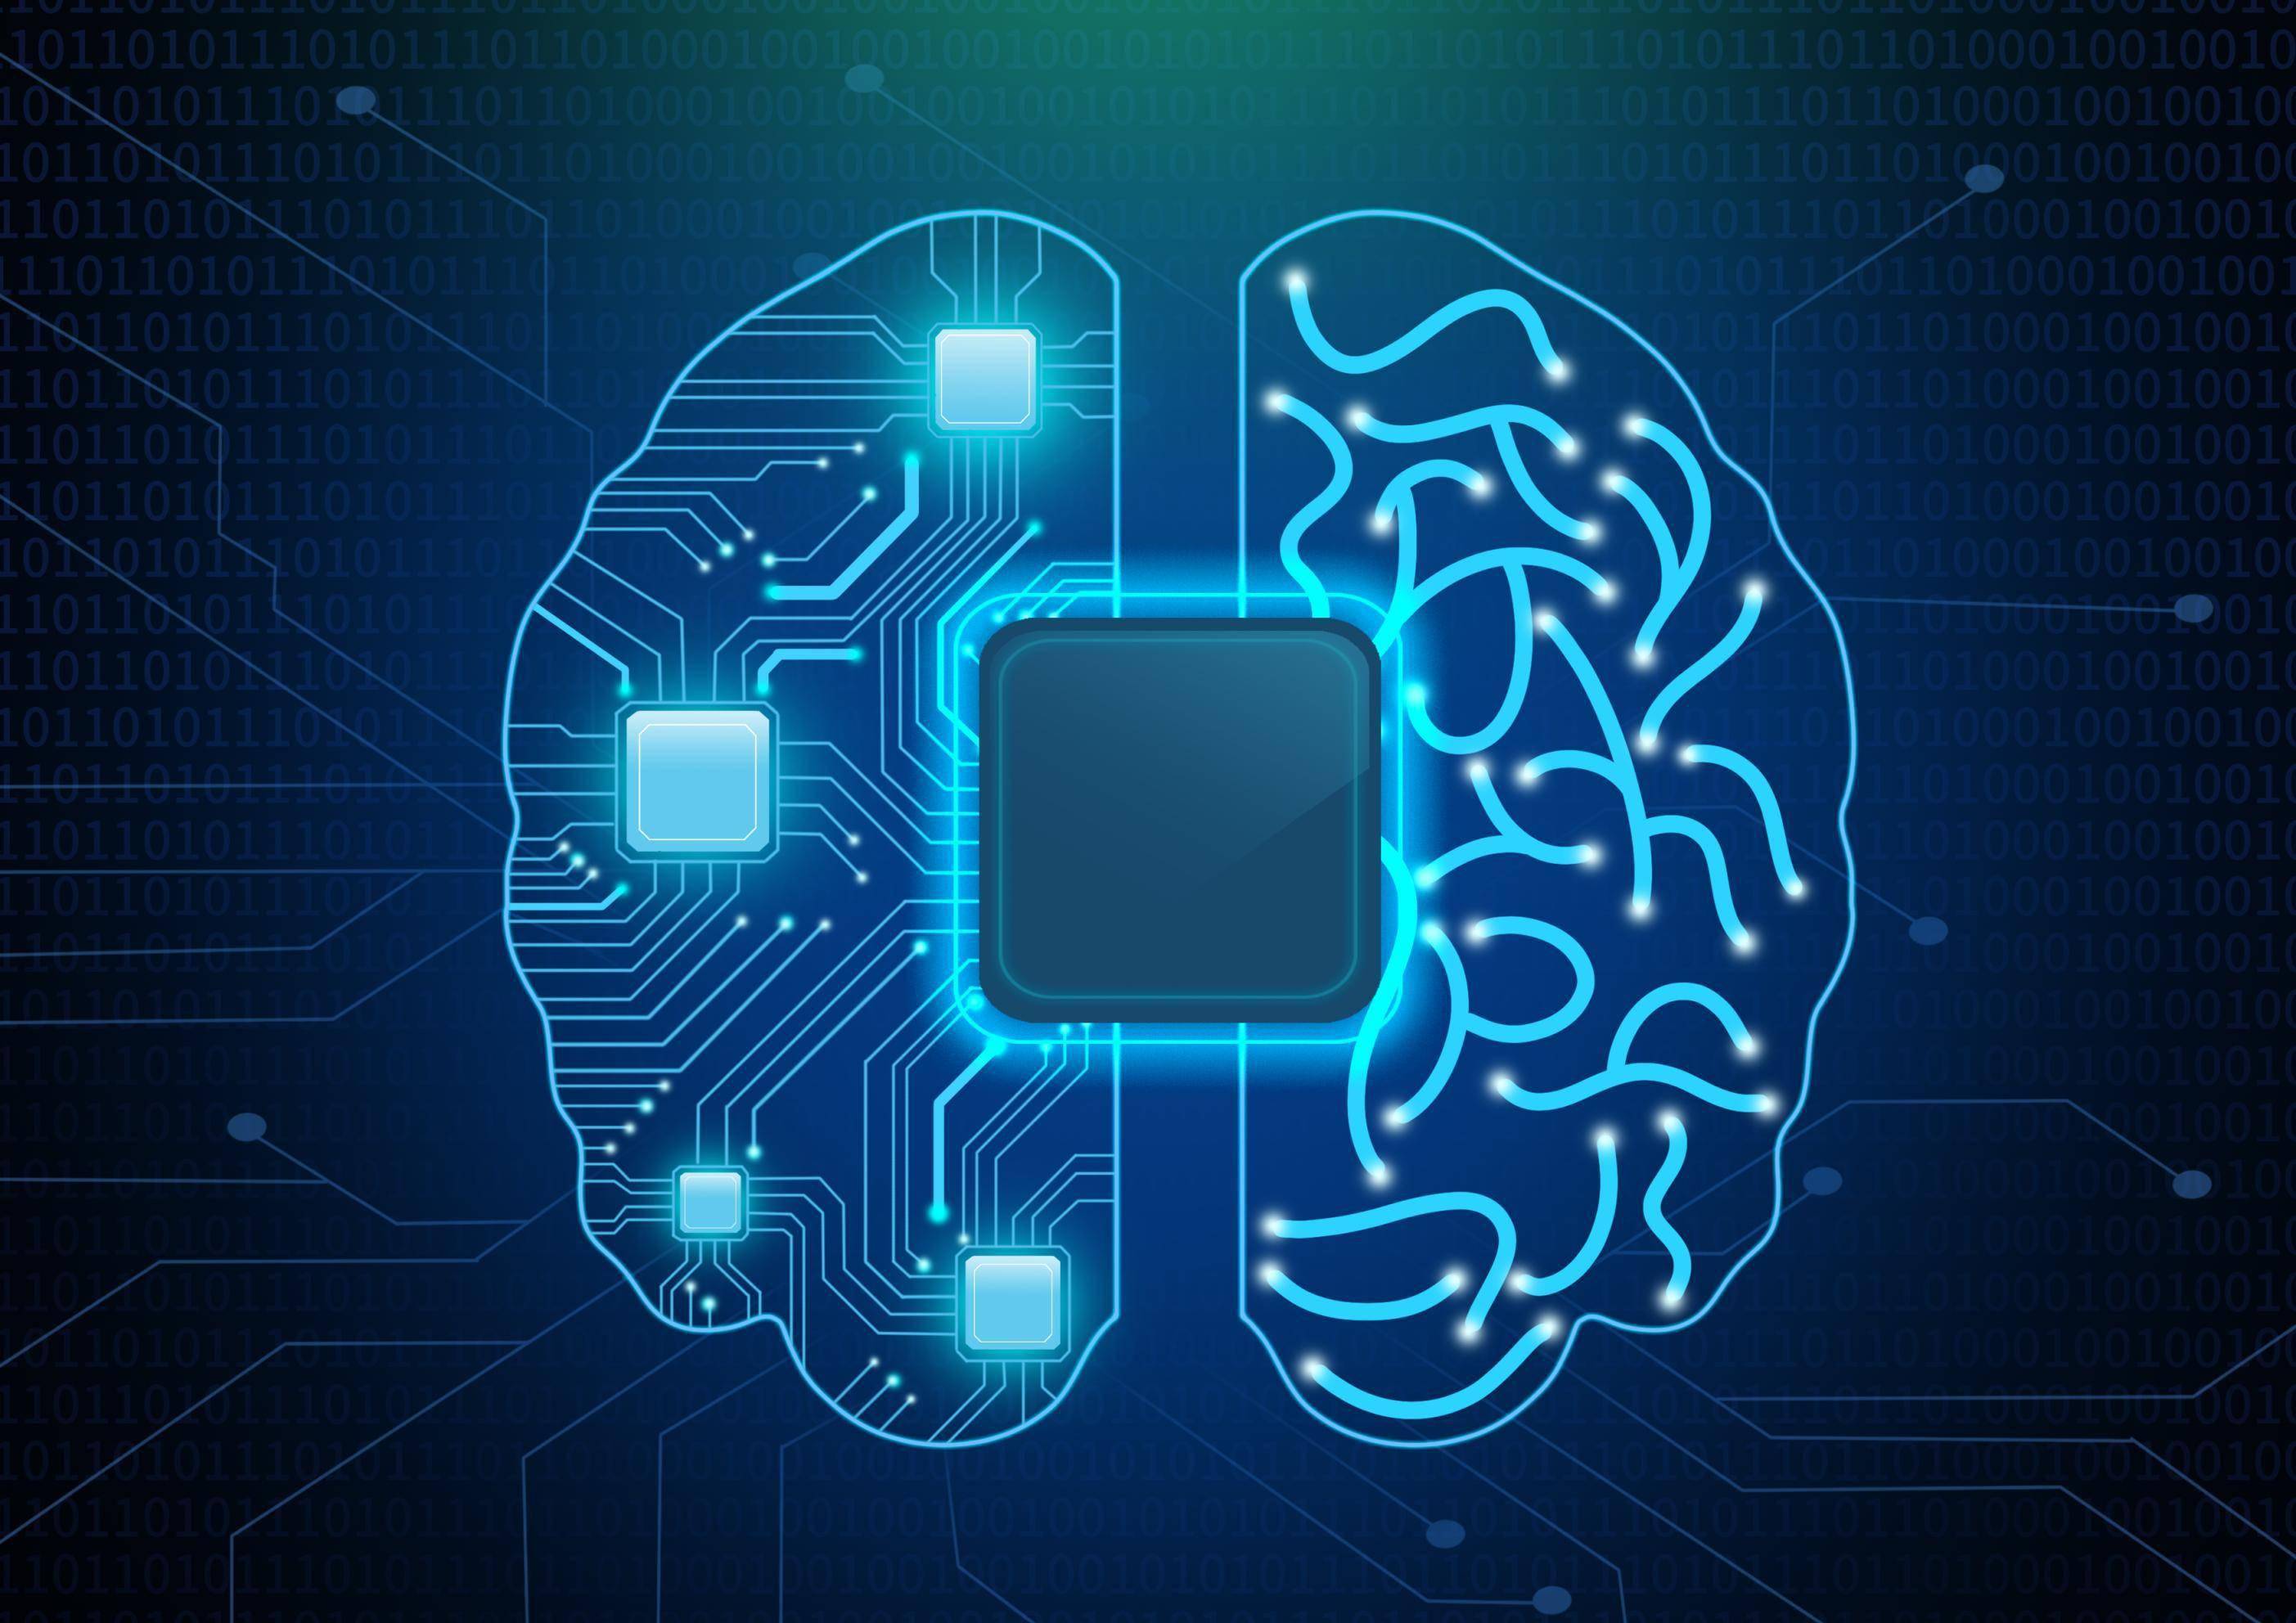 未来,植入脑机接口将给人类带来什么?